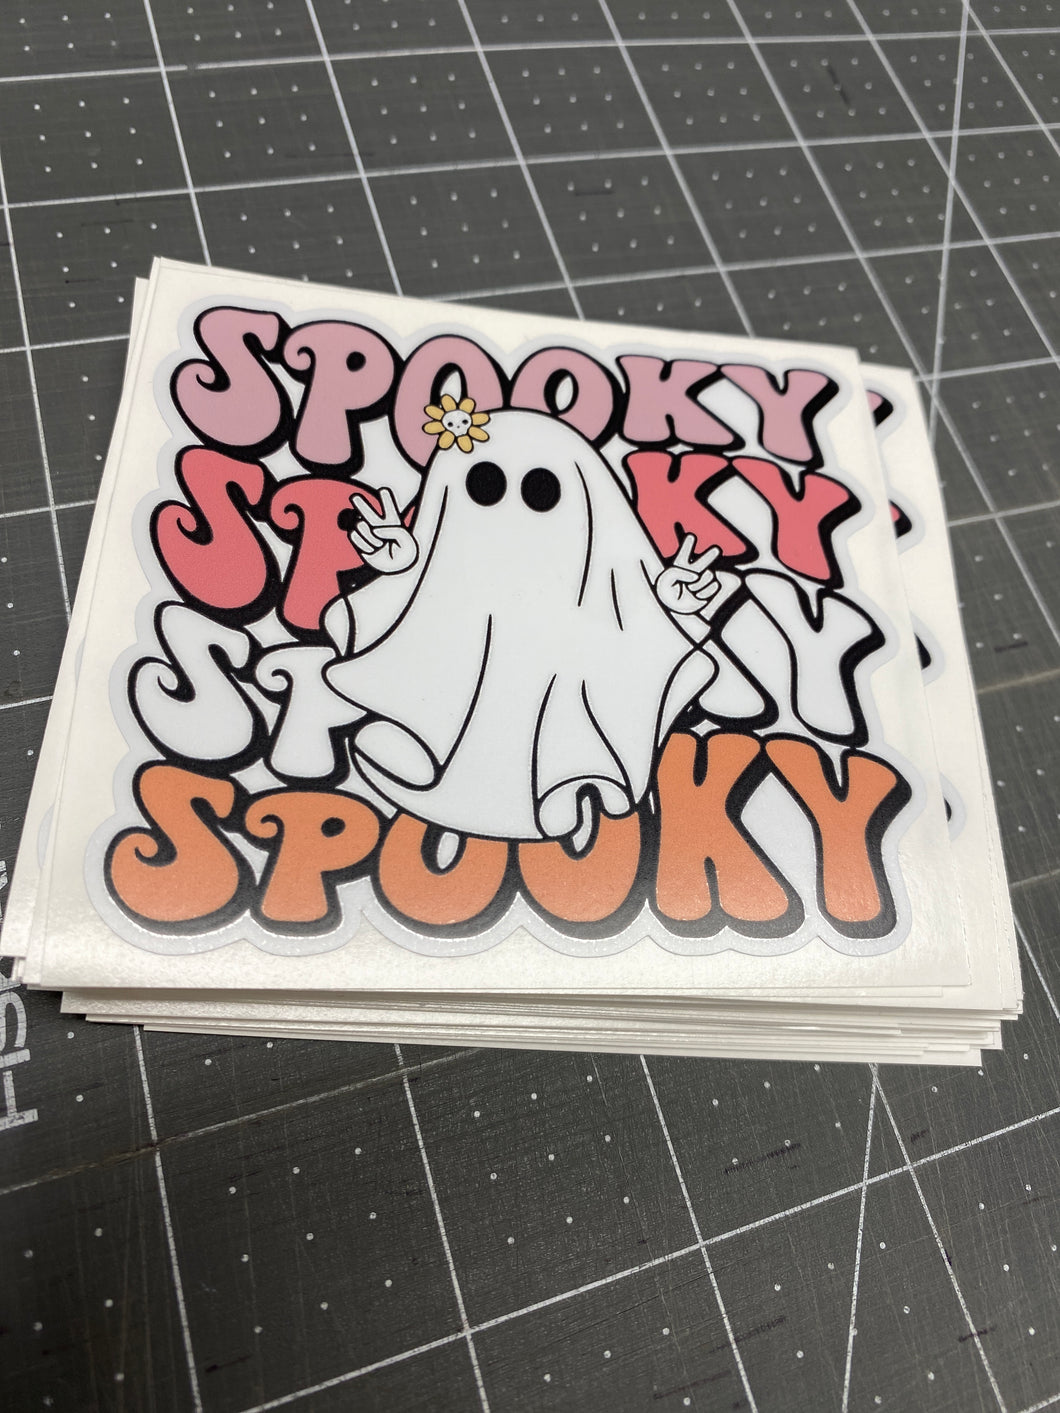 Sticker | 74P | Spooky Ghost | Waterproof Vinyl Sticker | White | Permanent